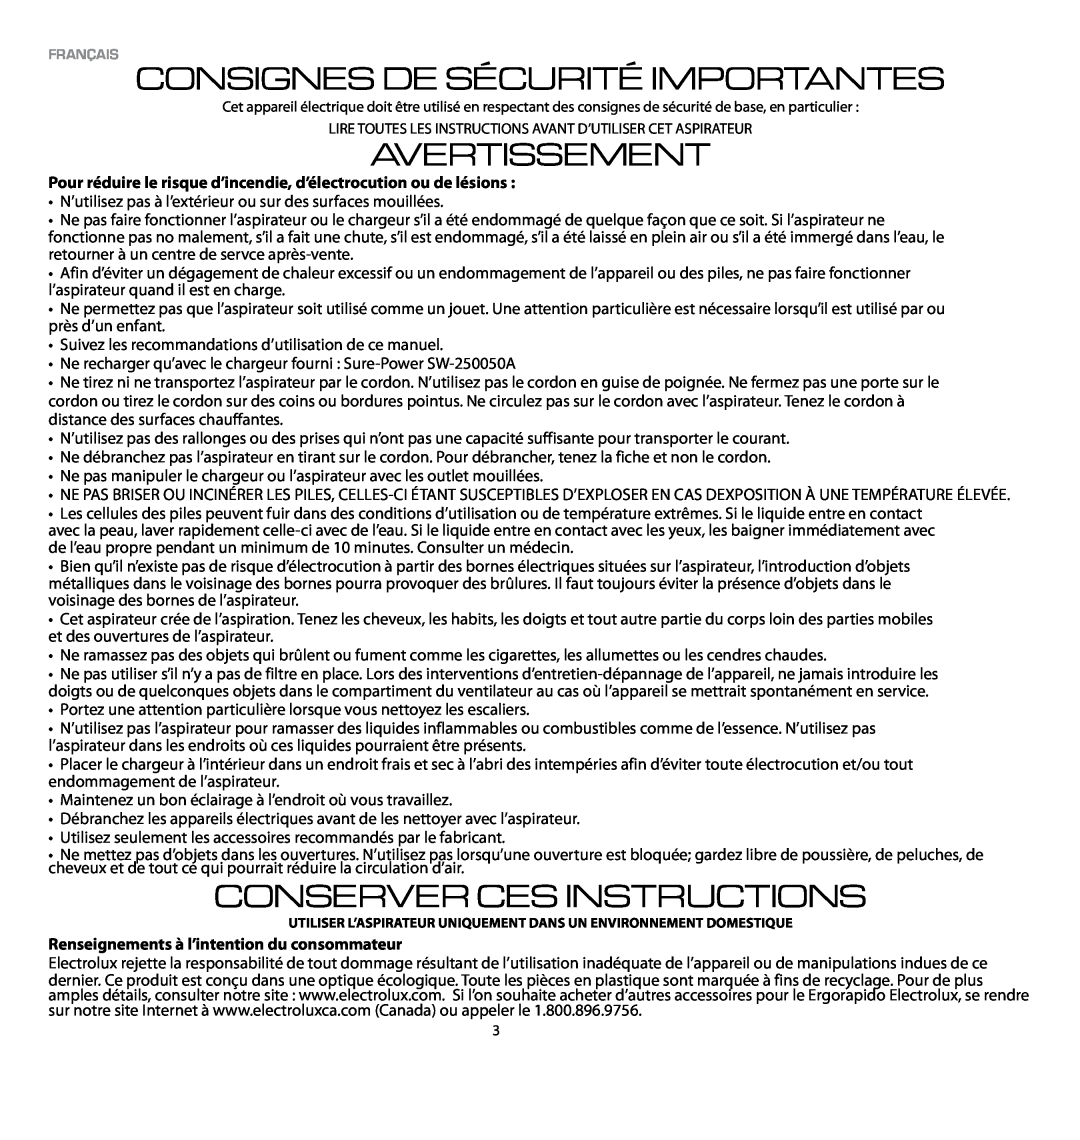 Electrolux EL1030A manual Consignes De Sécurité Importantes, Avertissement, Conserver Ces Instructions 